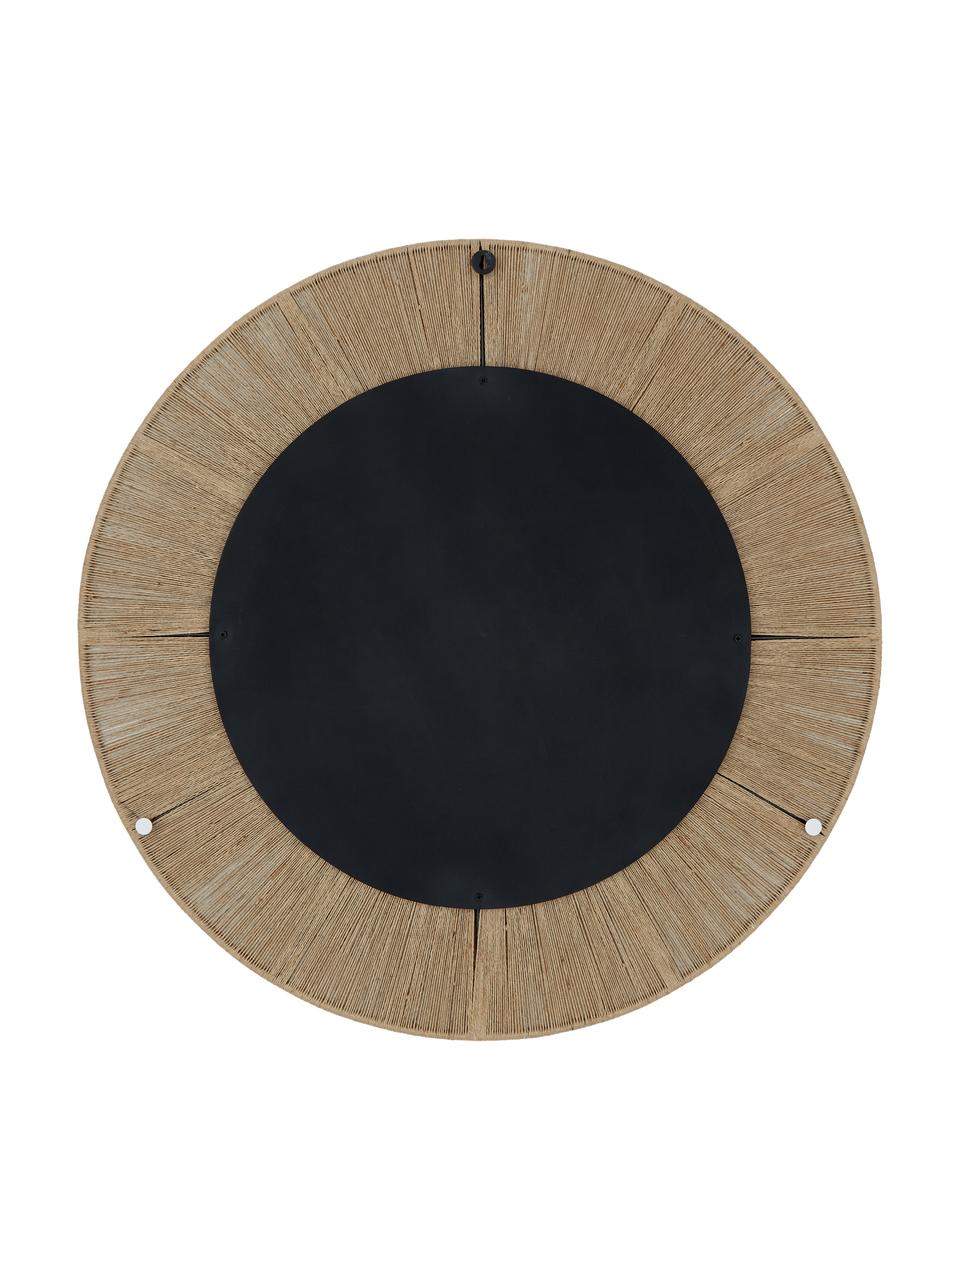 Okrągłe lustro ścienne z ramą ze sznurka Citra, Beżowy, Ø 90 x G 3 cm